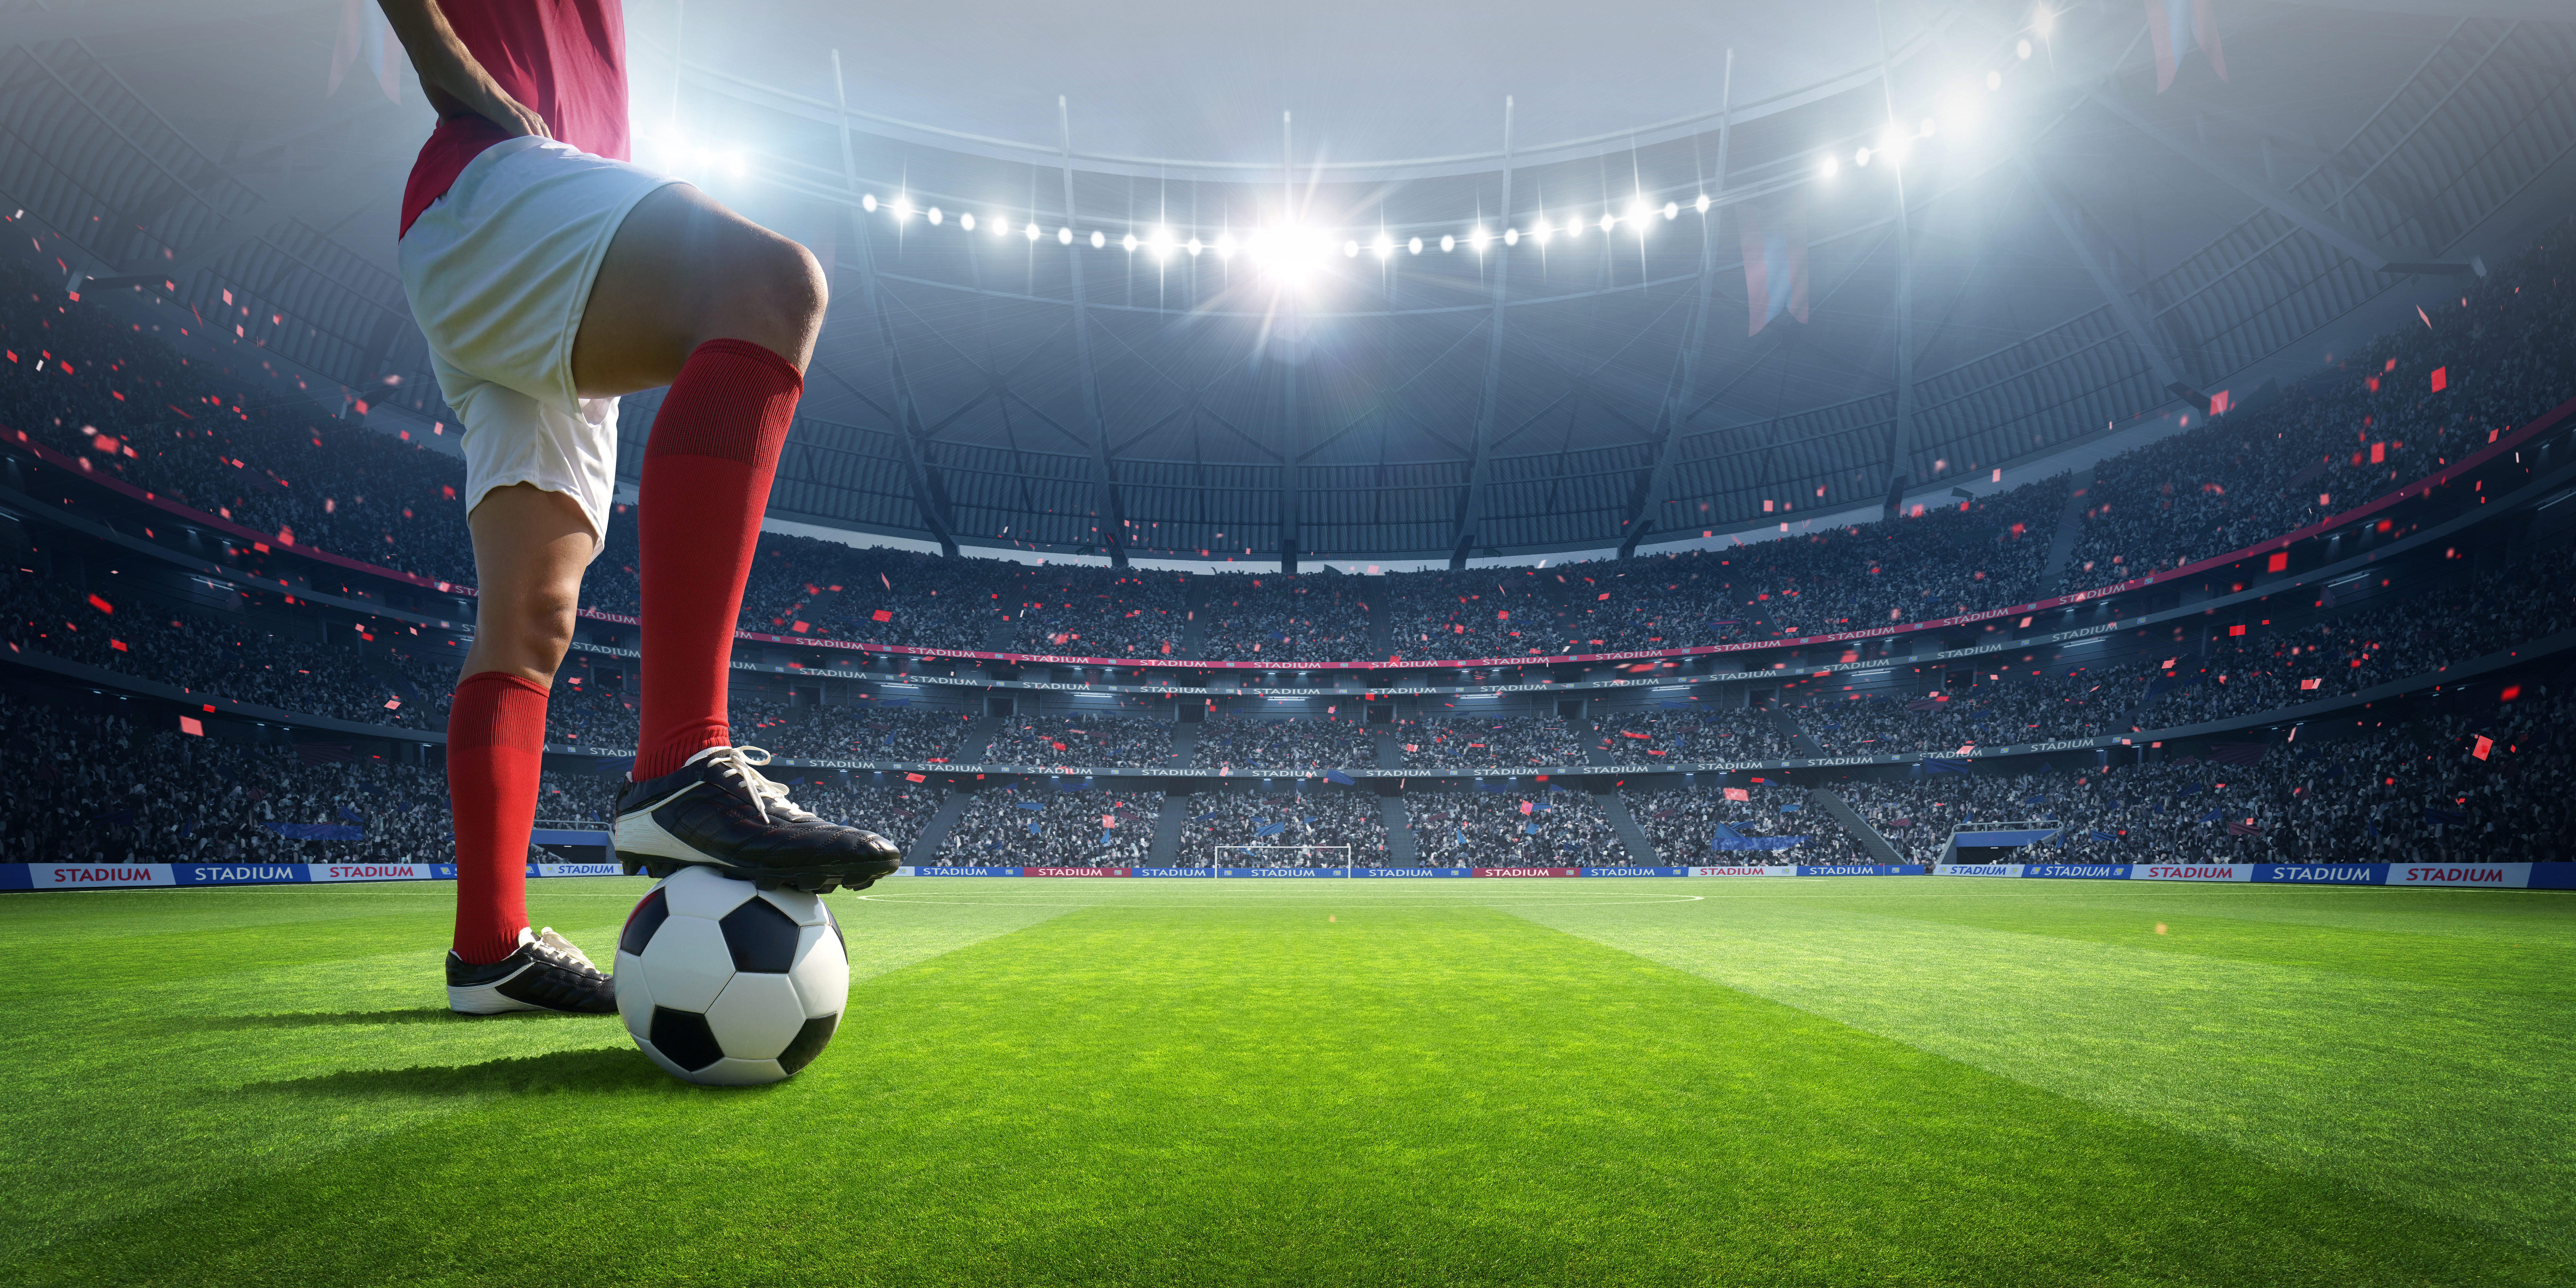 Ein Fußballspieler im Stadion | Quelle: Shutterstock